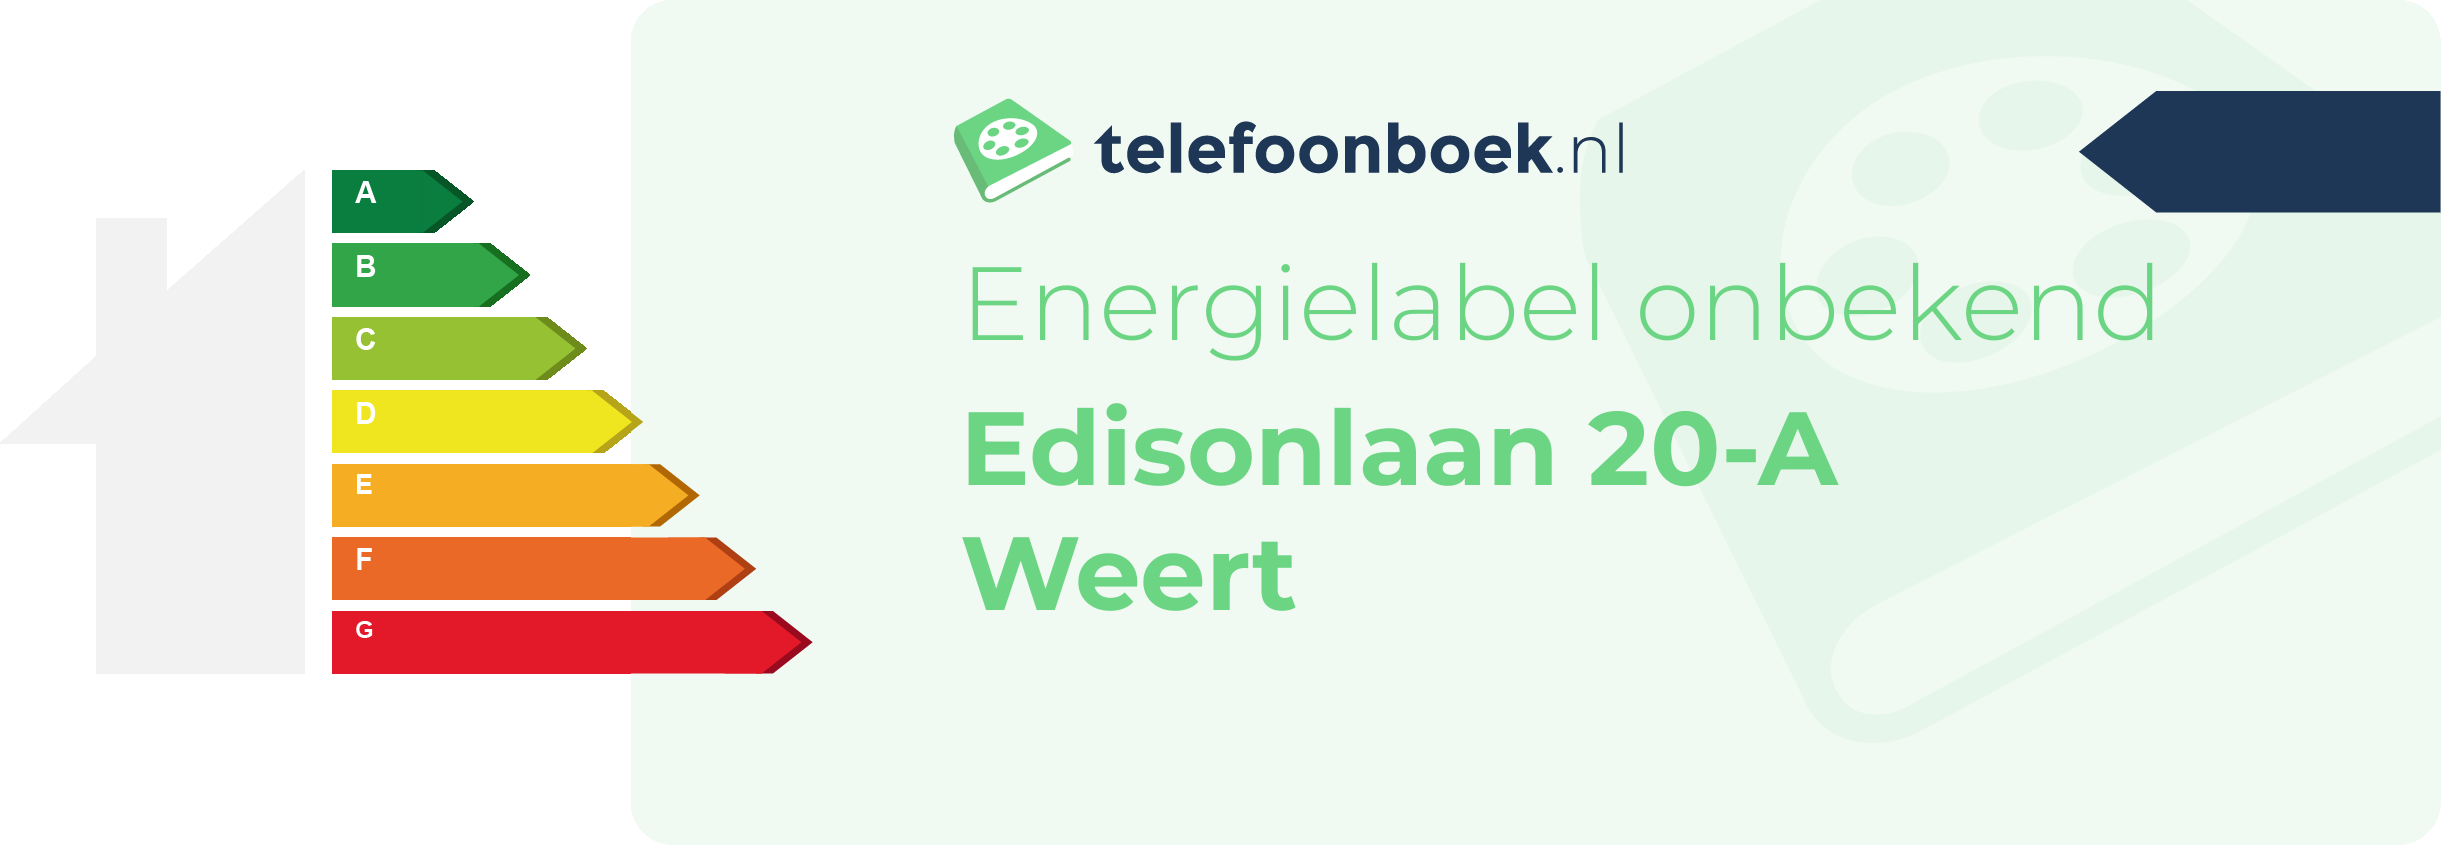 Energielabel Edisonlaan 20-A Weert